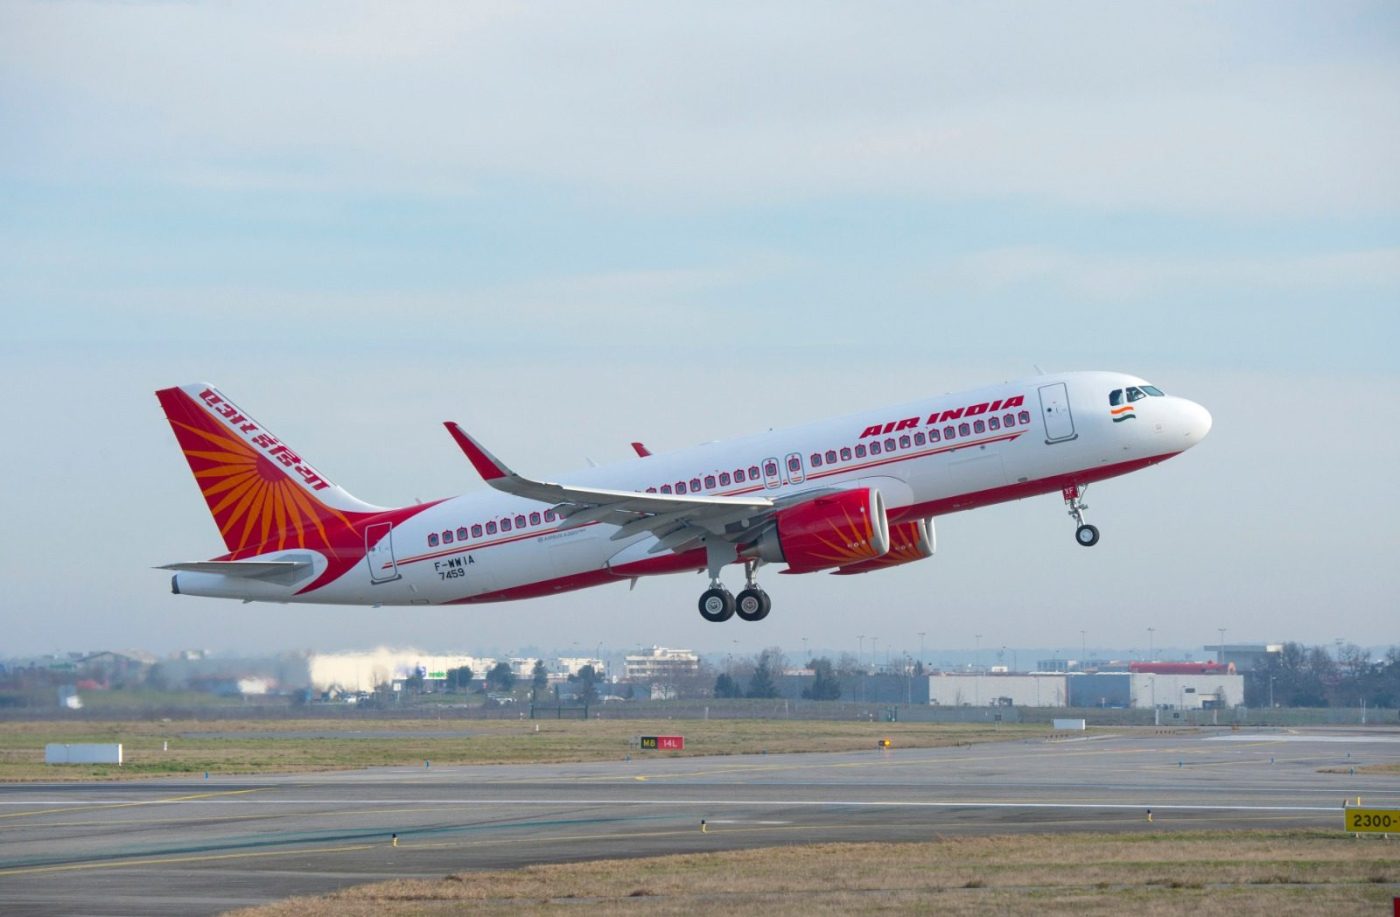 Air India’nın 470 uçaklık siparişinin liste fiyatı 70 milyar dolar